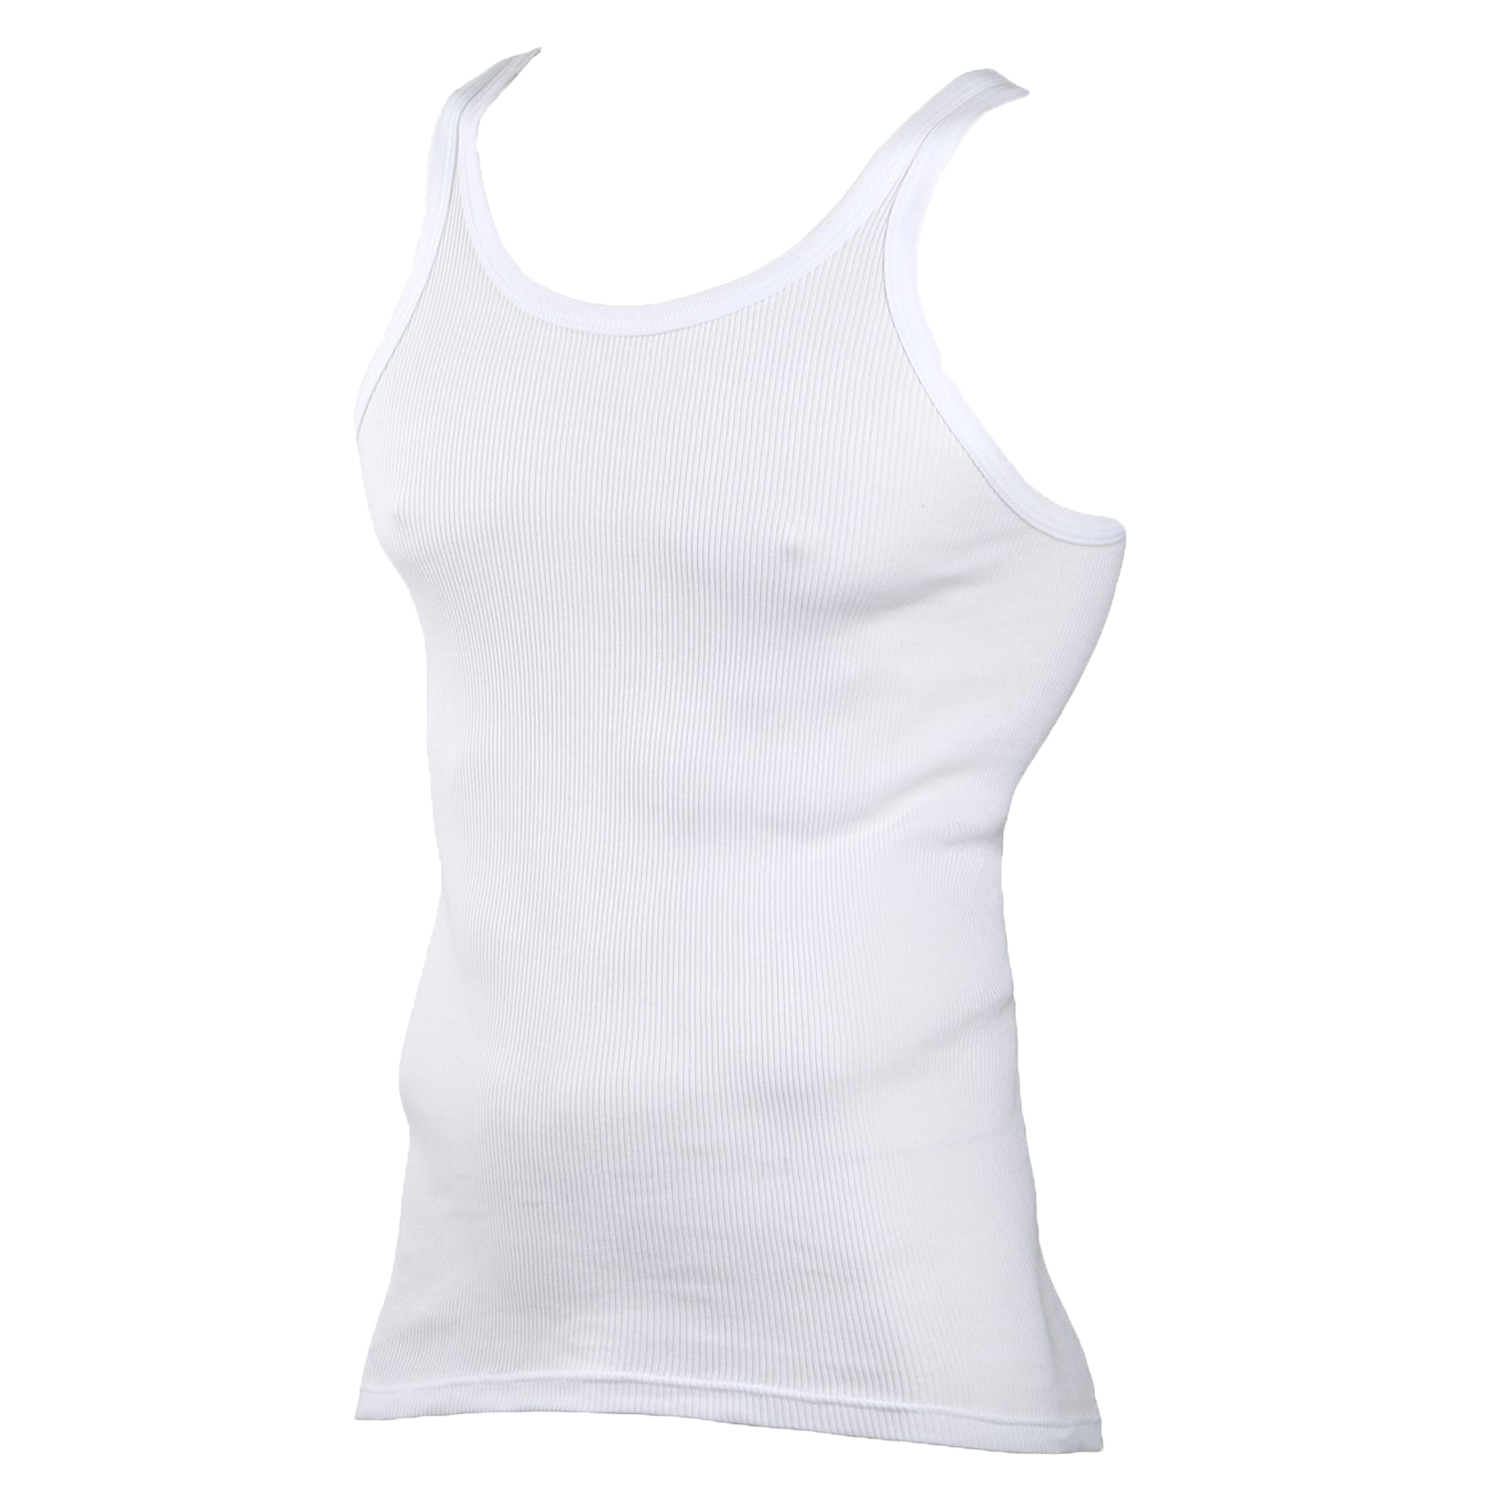 Unterhemd Weiß - 100 % gekämmte Baumwolle - XXL Größen